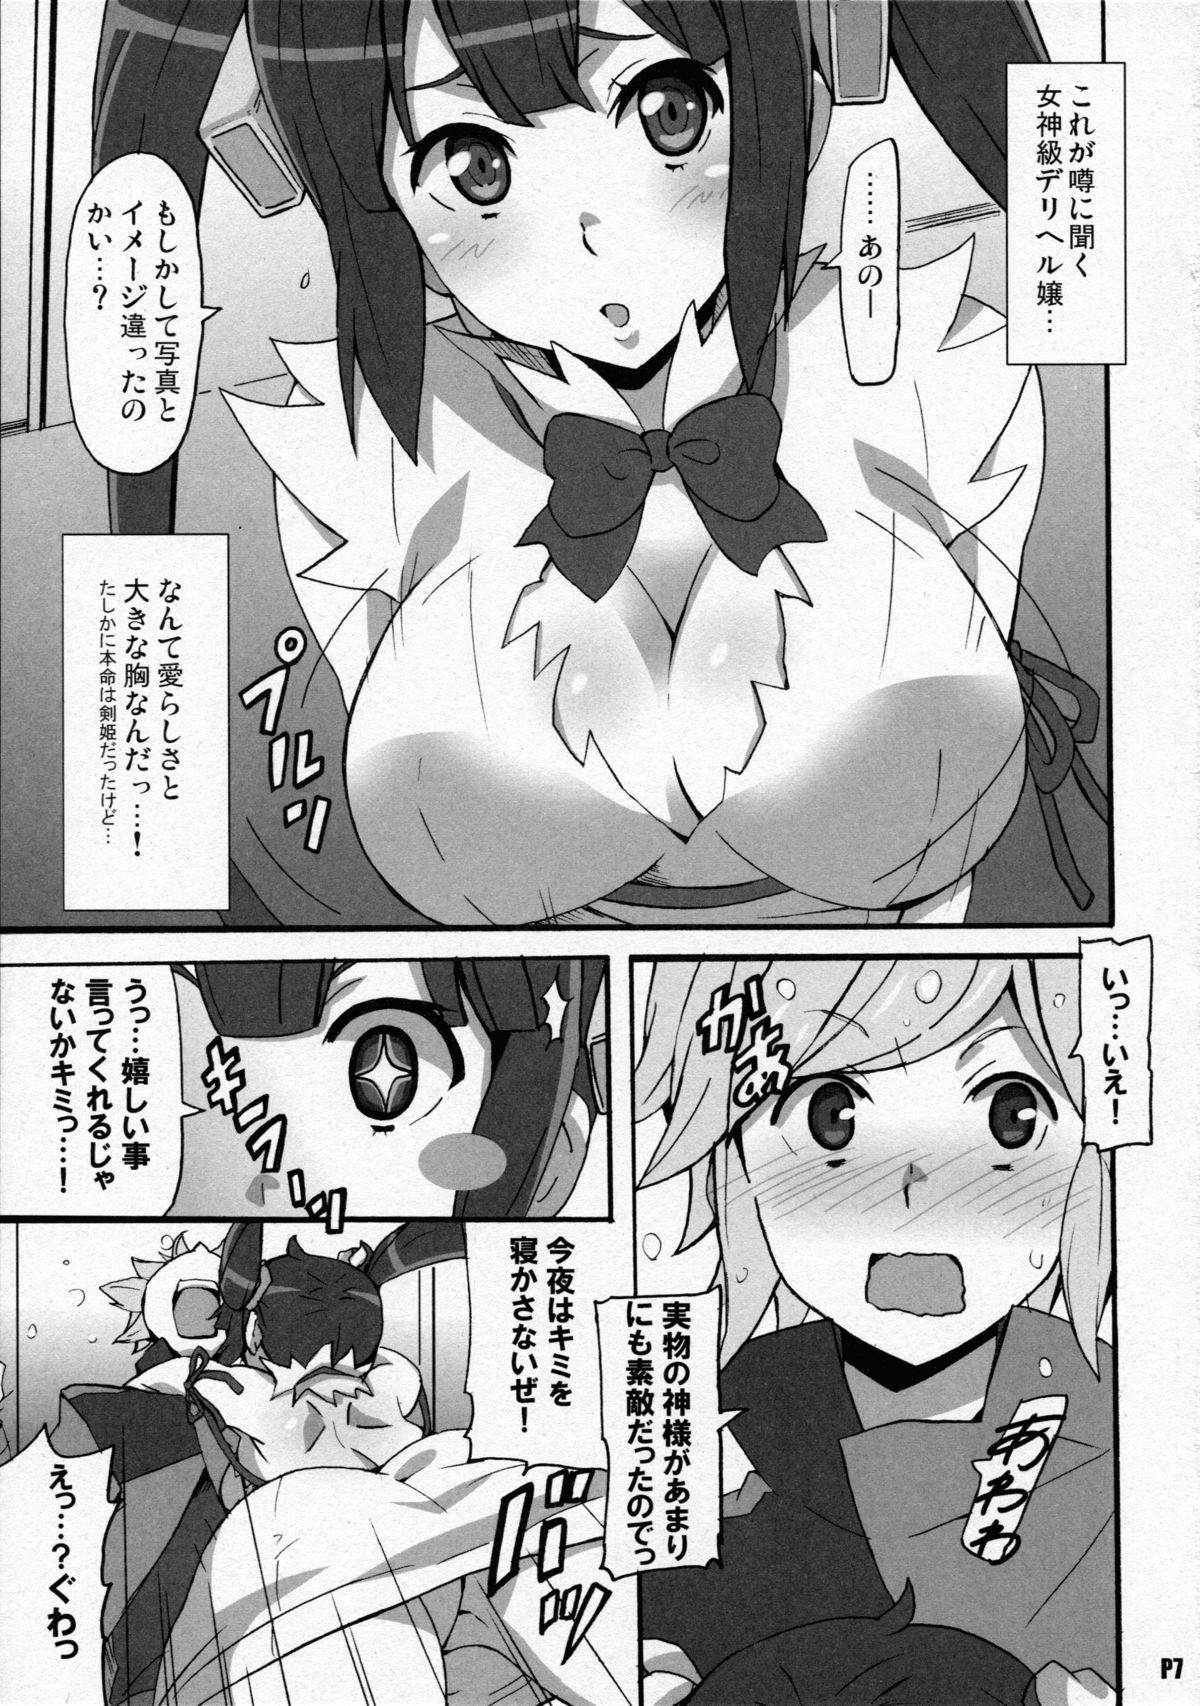 Porno Amateur Tokumei no Megami-tachi - Dungeon ni deai o motomeru no wa machigatteiru darou ka Exhib - Page 7